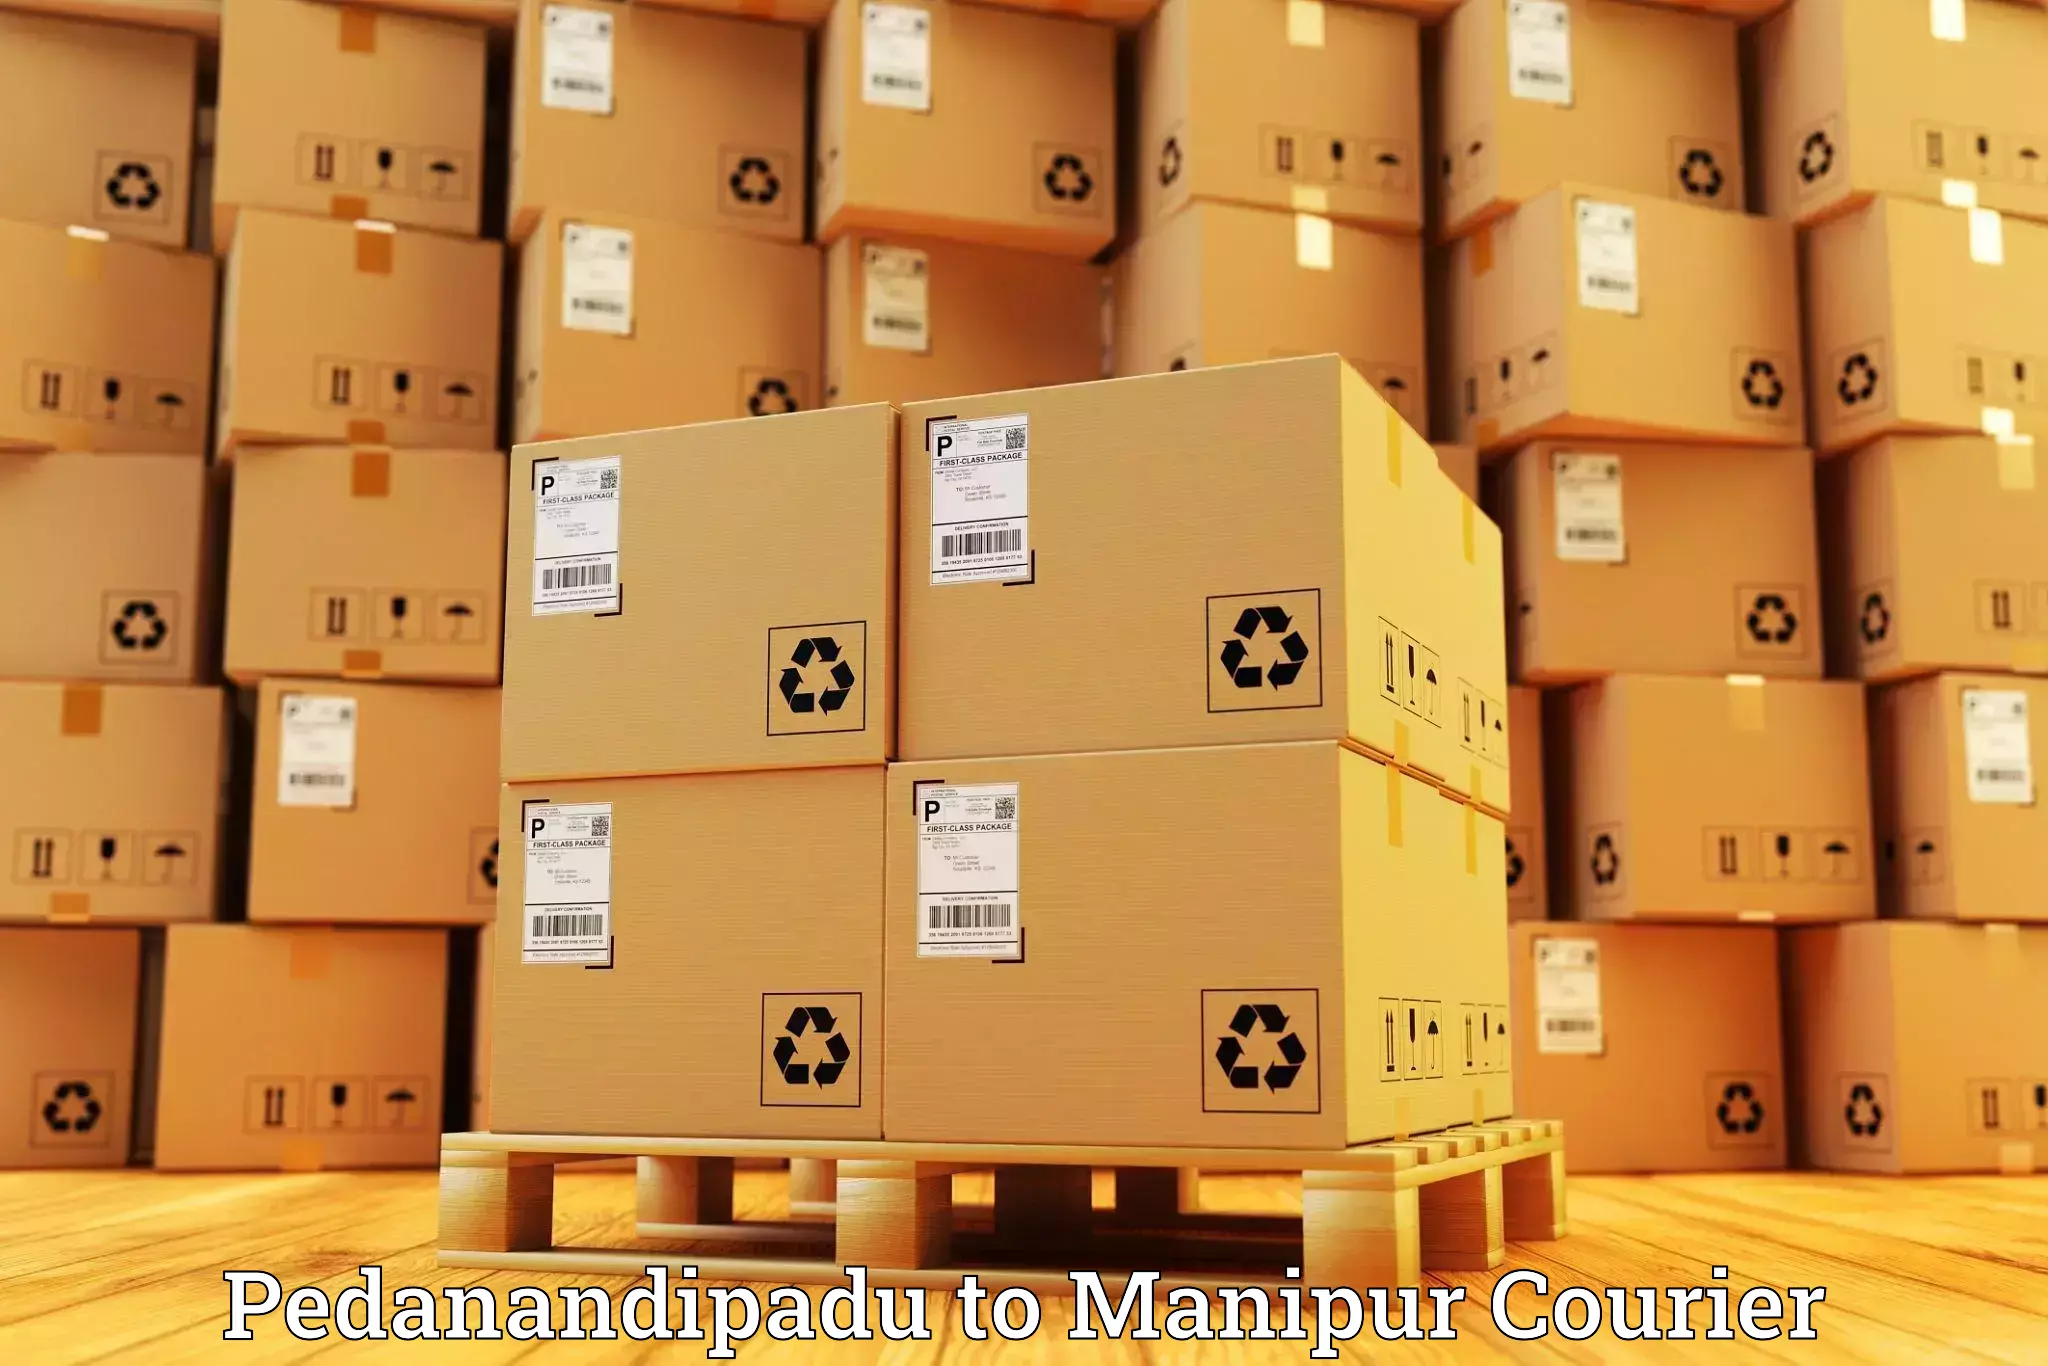 Round-the-clock parcel delivery Pedanandipadu to Churachandpur